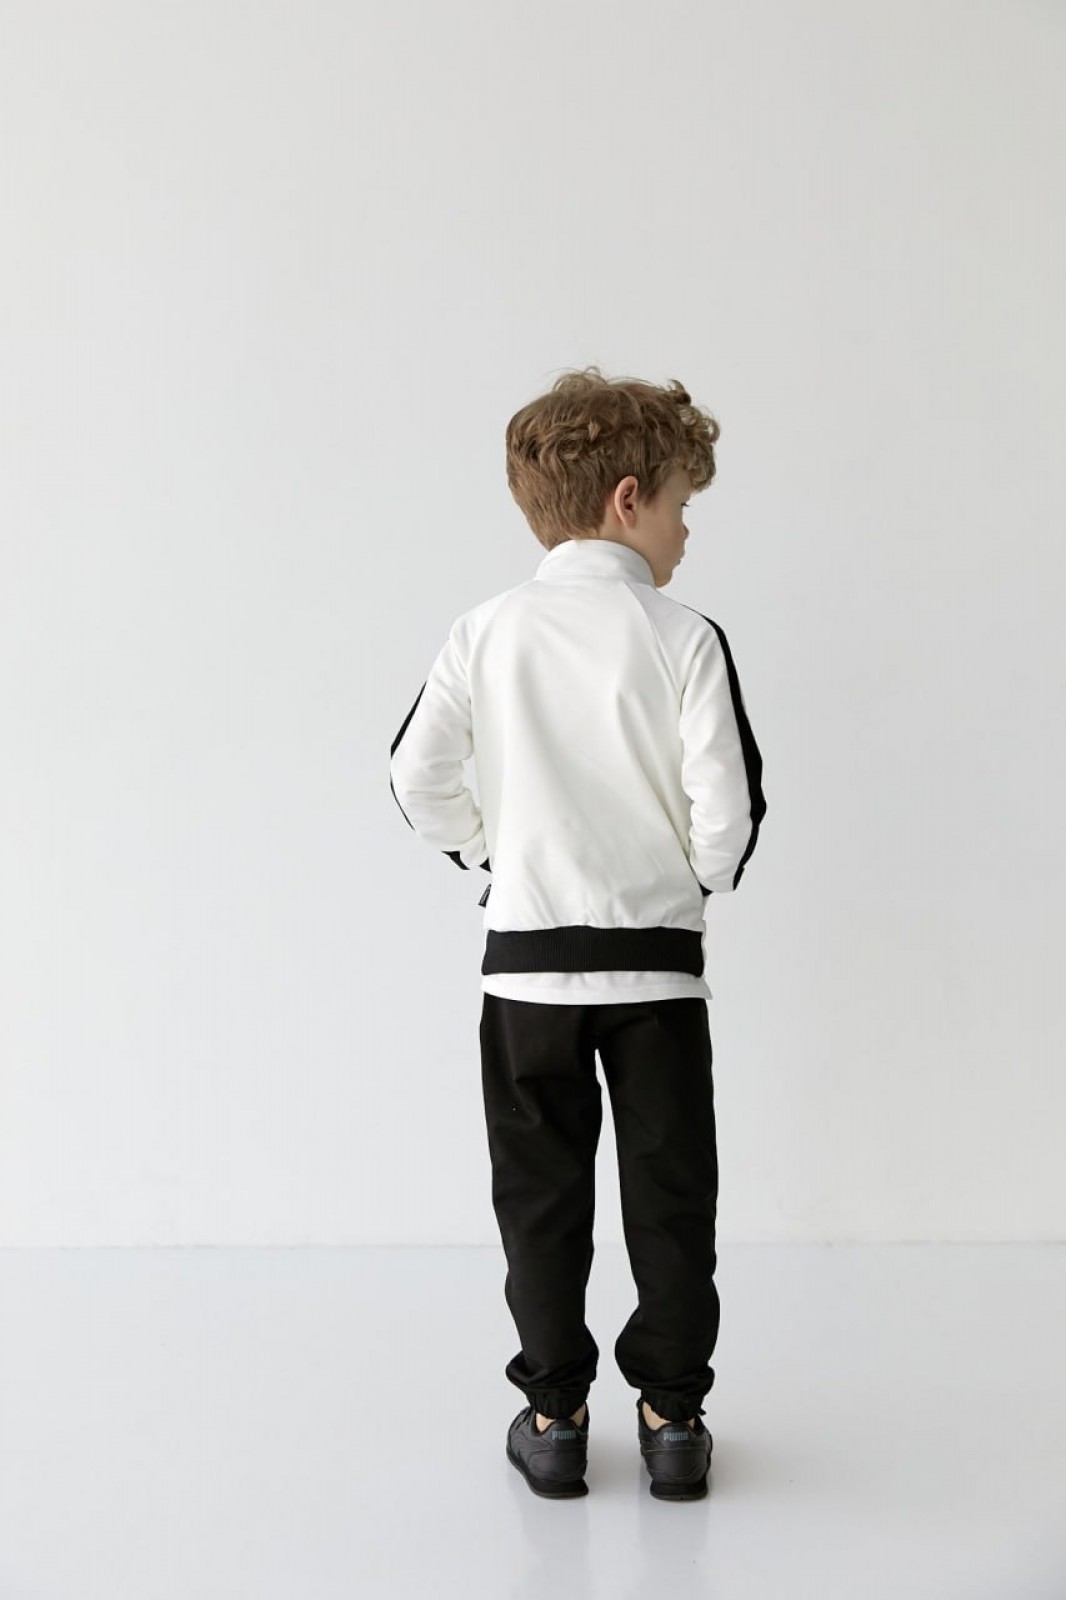 Спортивний костюм на хлопчика колір чорний з білим 406589